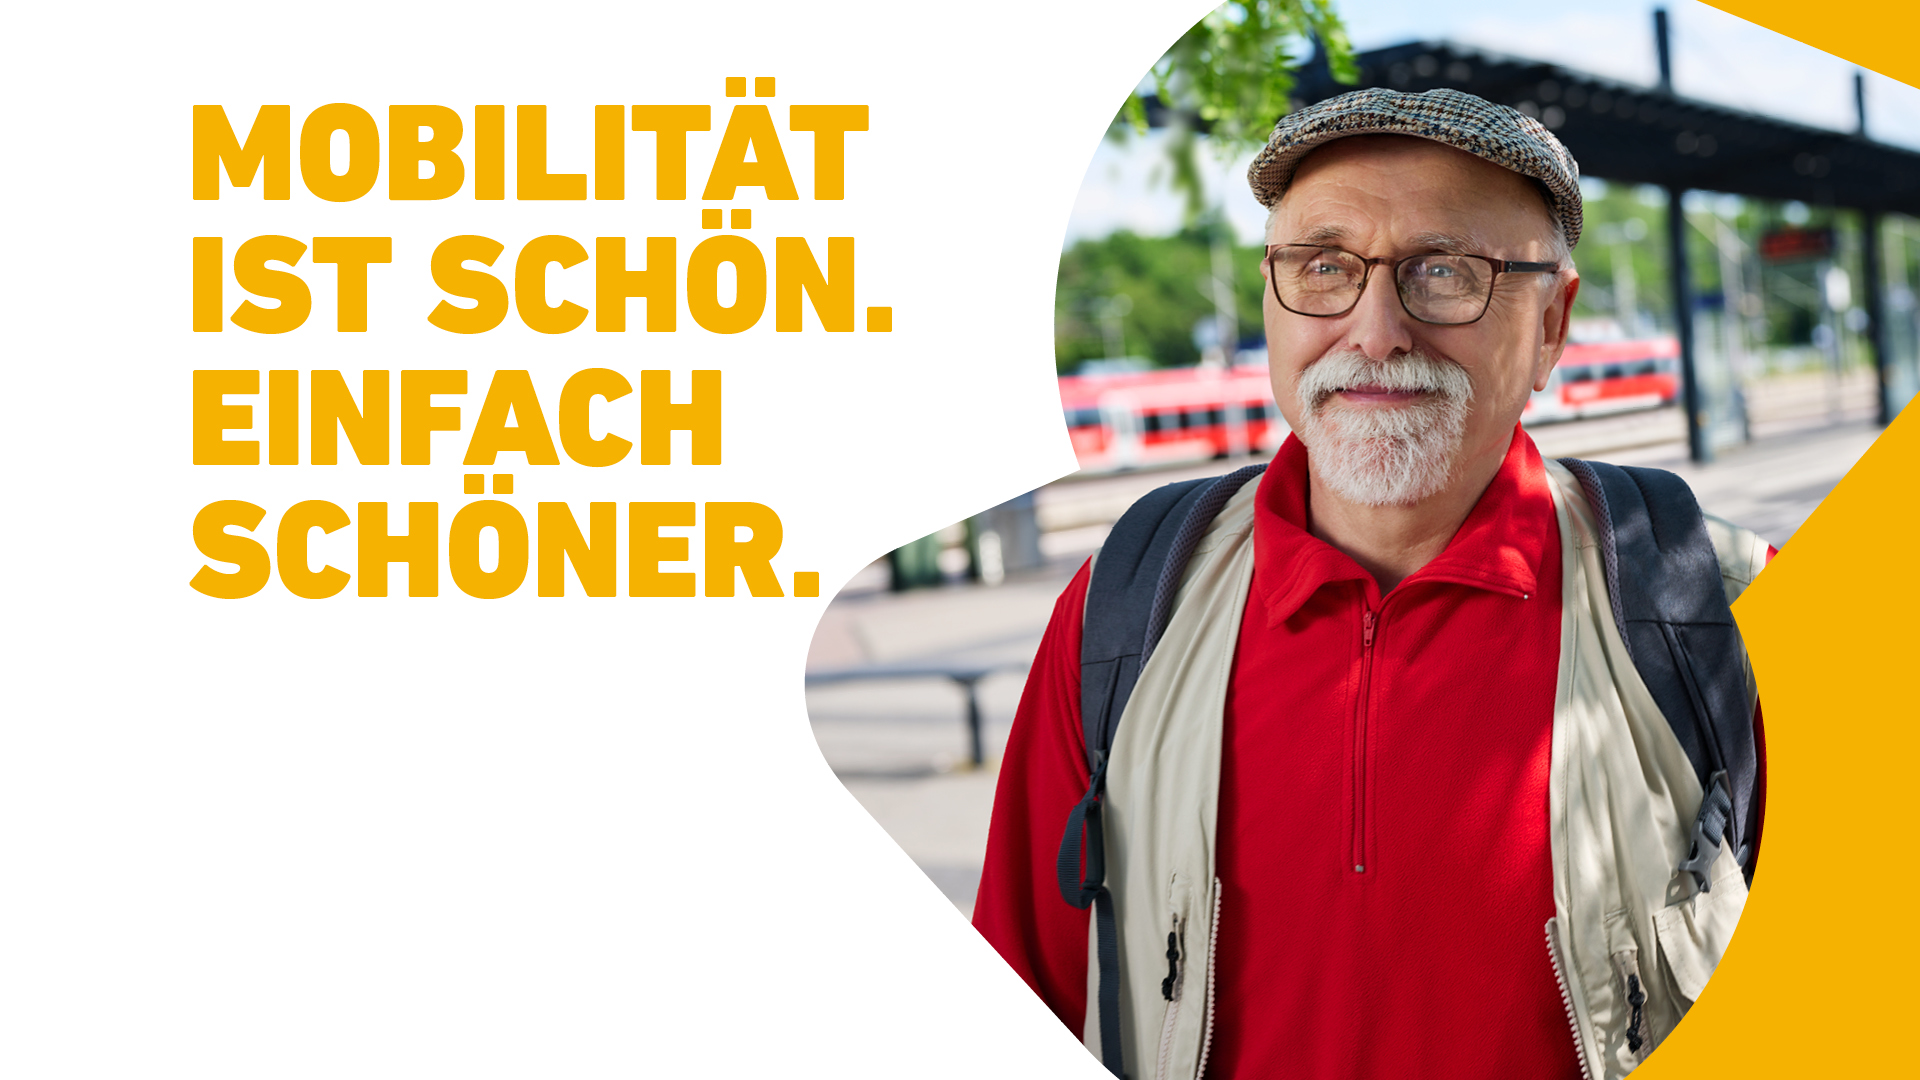 Ein Senior steht lächelnd an einem Busbahnhof, hinter ihm fährt ein roter Zug vorbei. Neben ihm steht der Text: Mobilität ist schön. Einfach schöner.